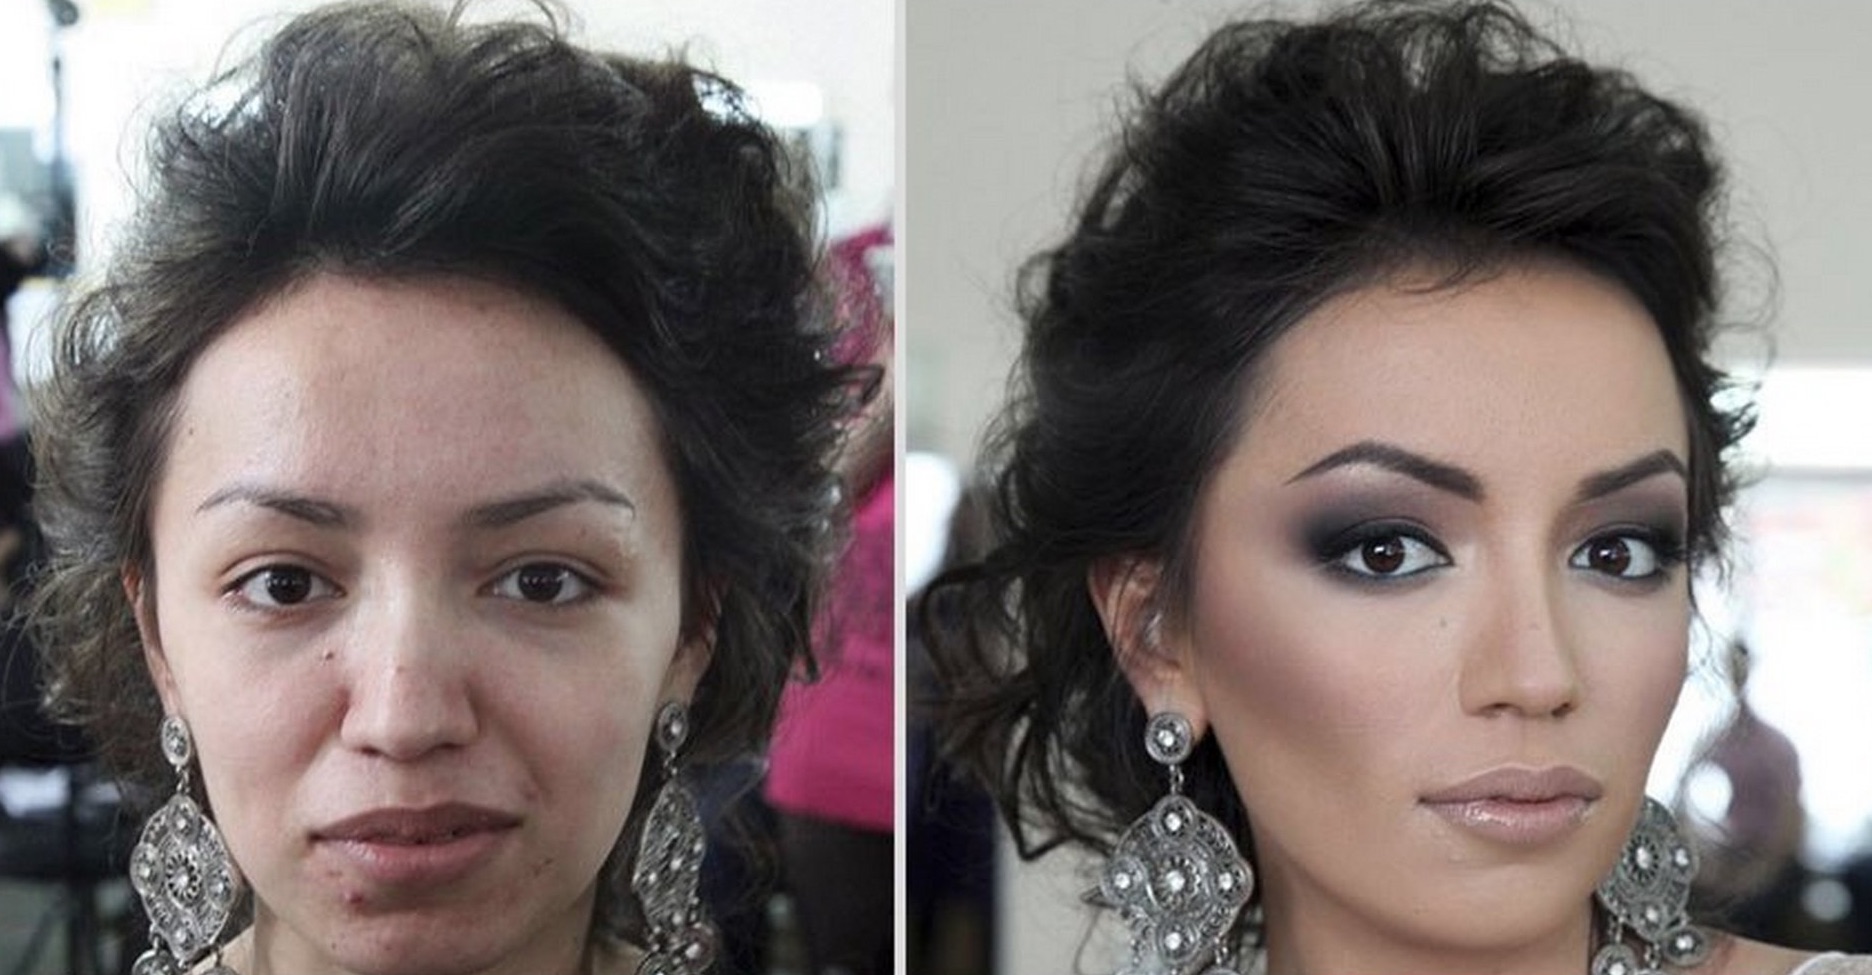 Man Sues Wife Makeup